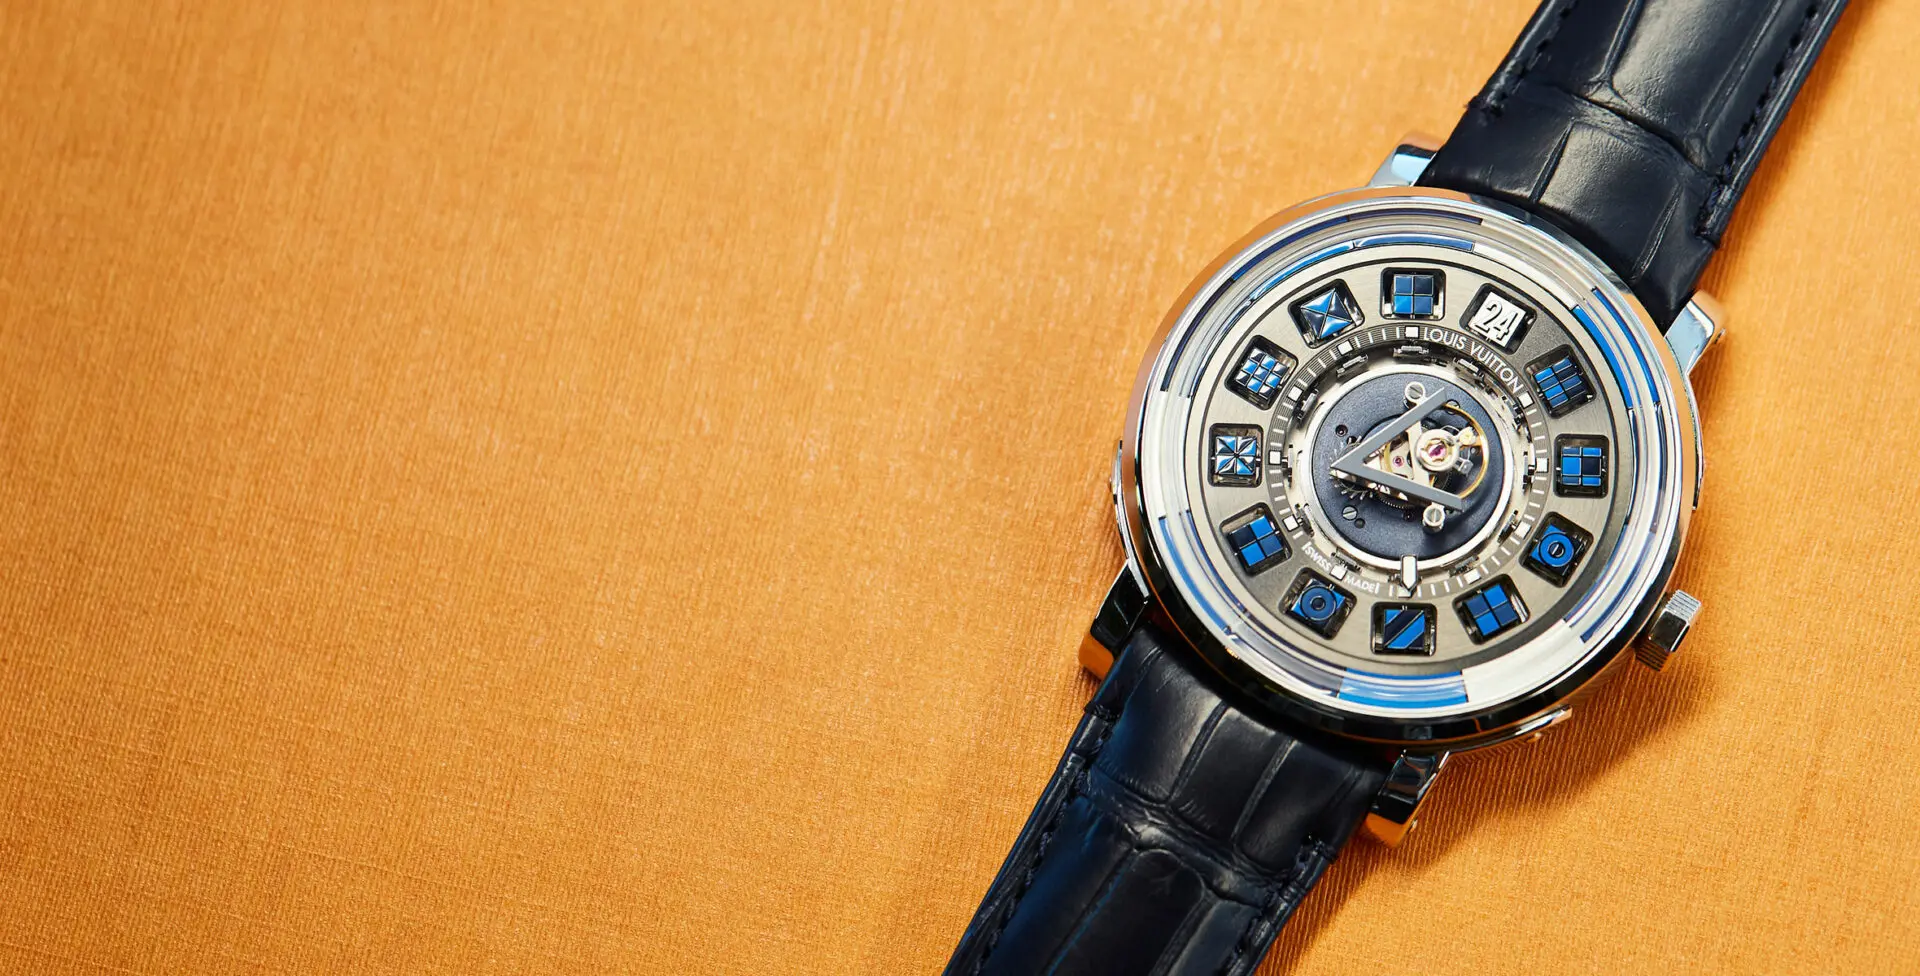 Escale Spin Time Tourbillon Central Blue watch, Louis Vuitton